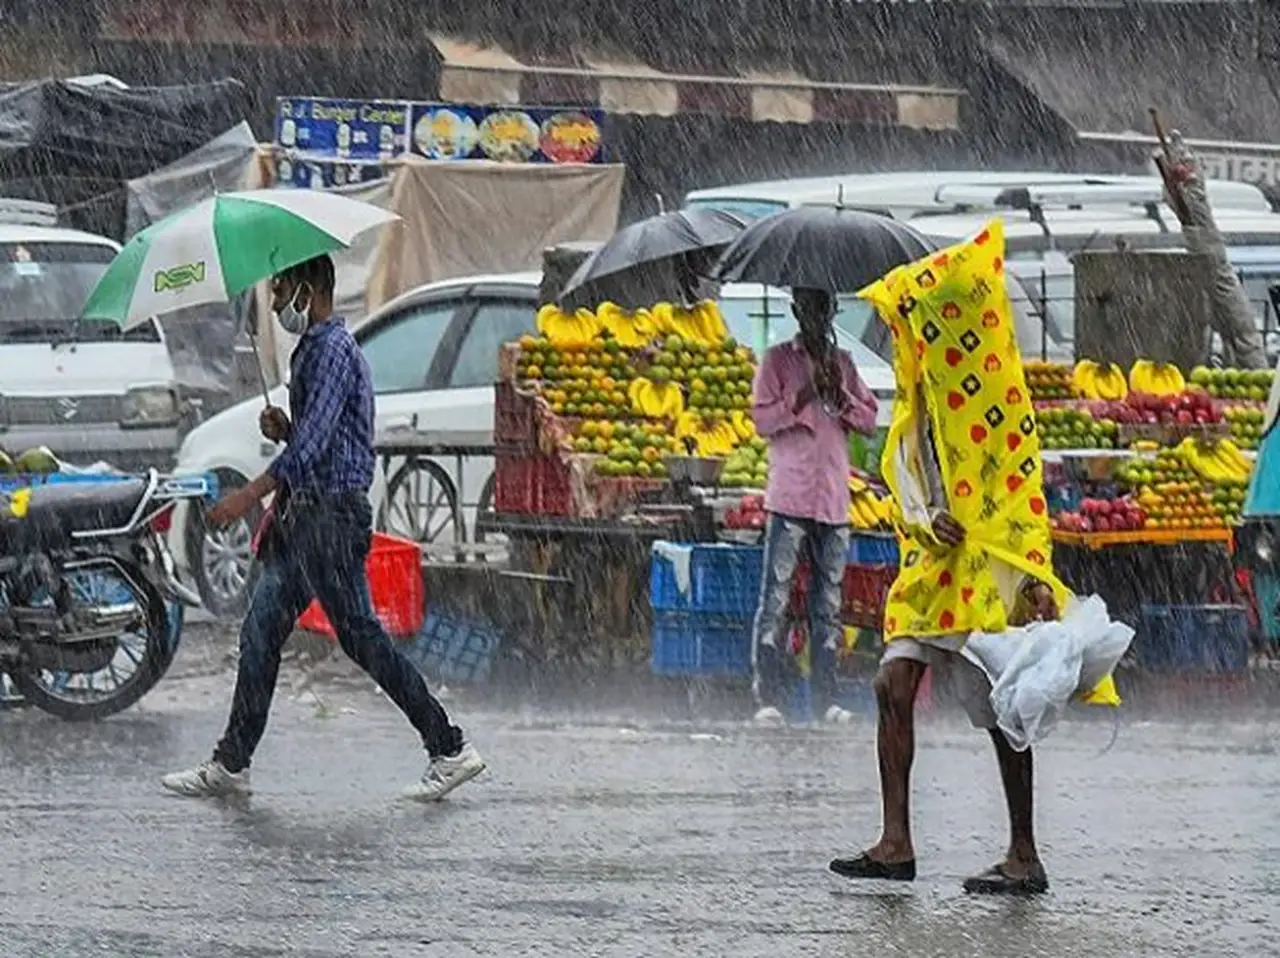 People walking on the streets in heavy rain